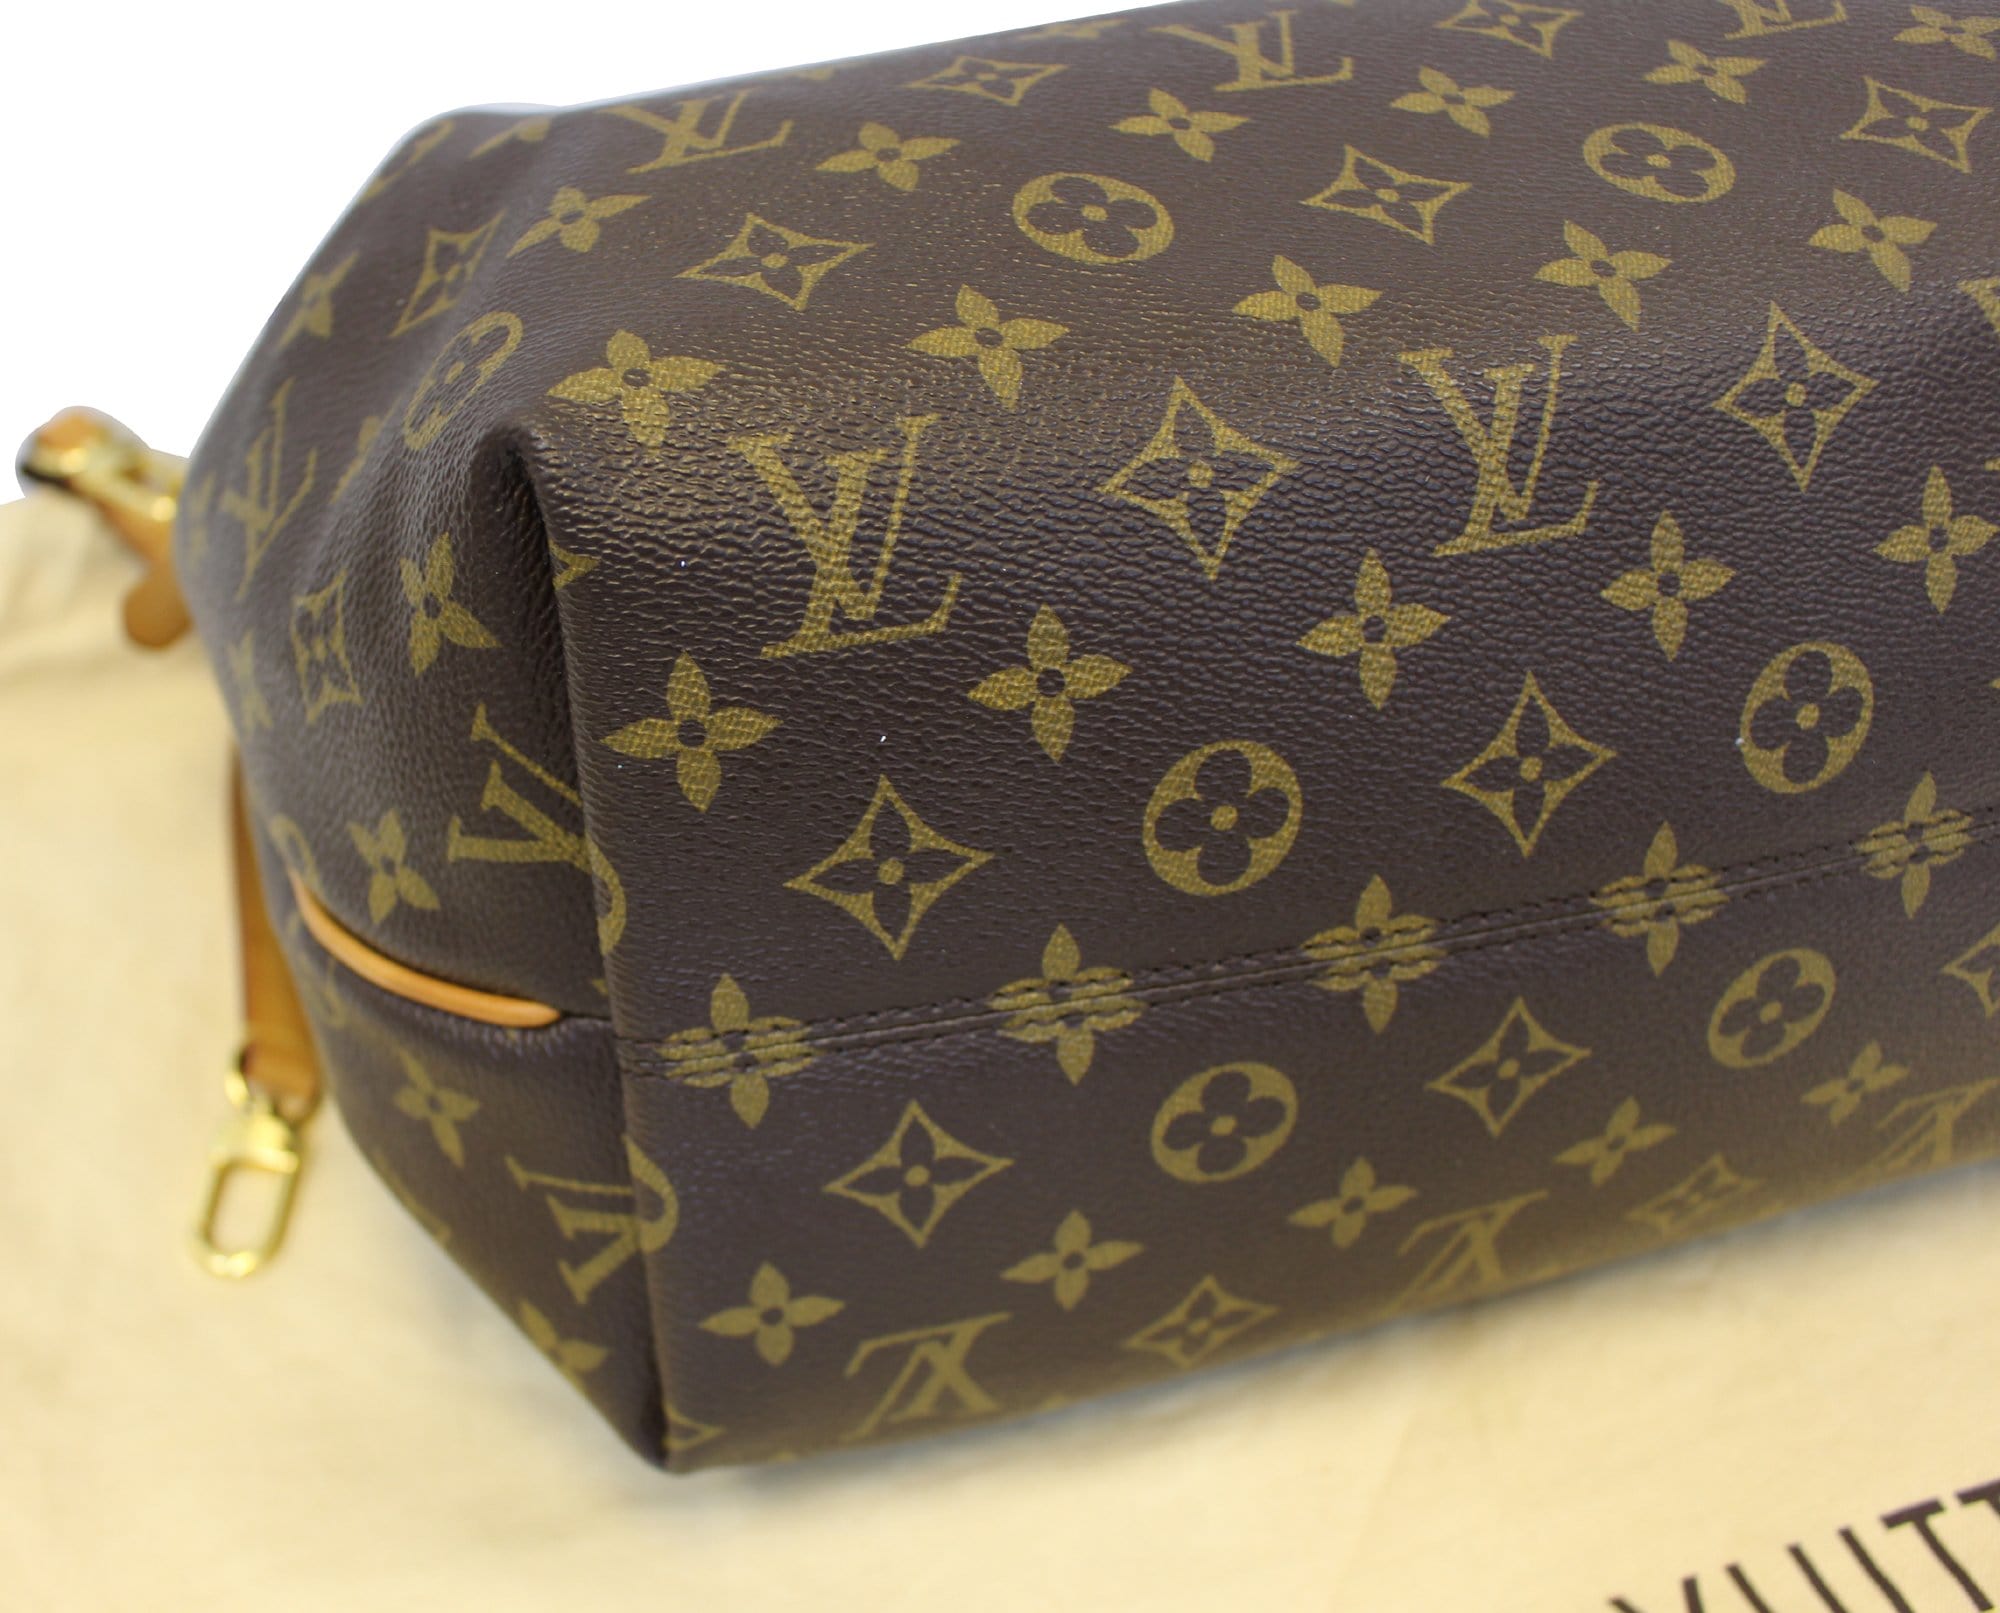 Louis Vuitton handbag turenne gm  Louis vuitton handbags, Fashion